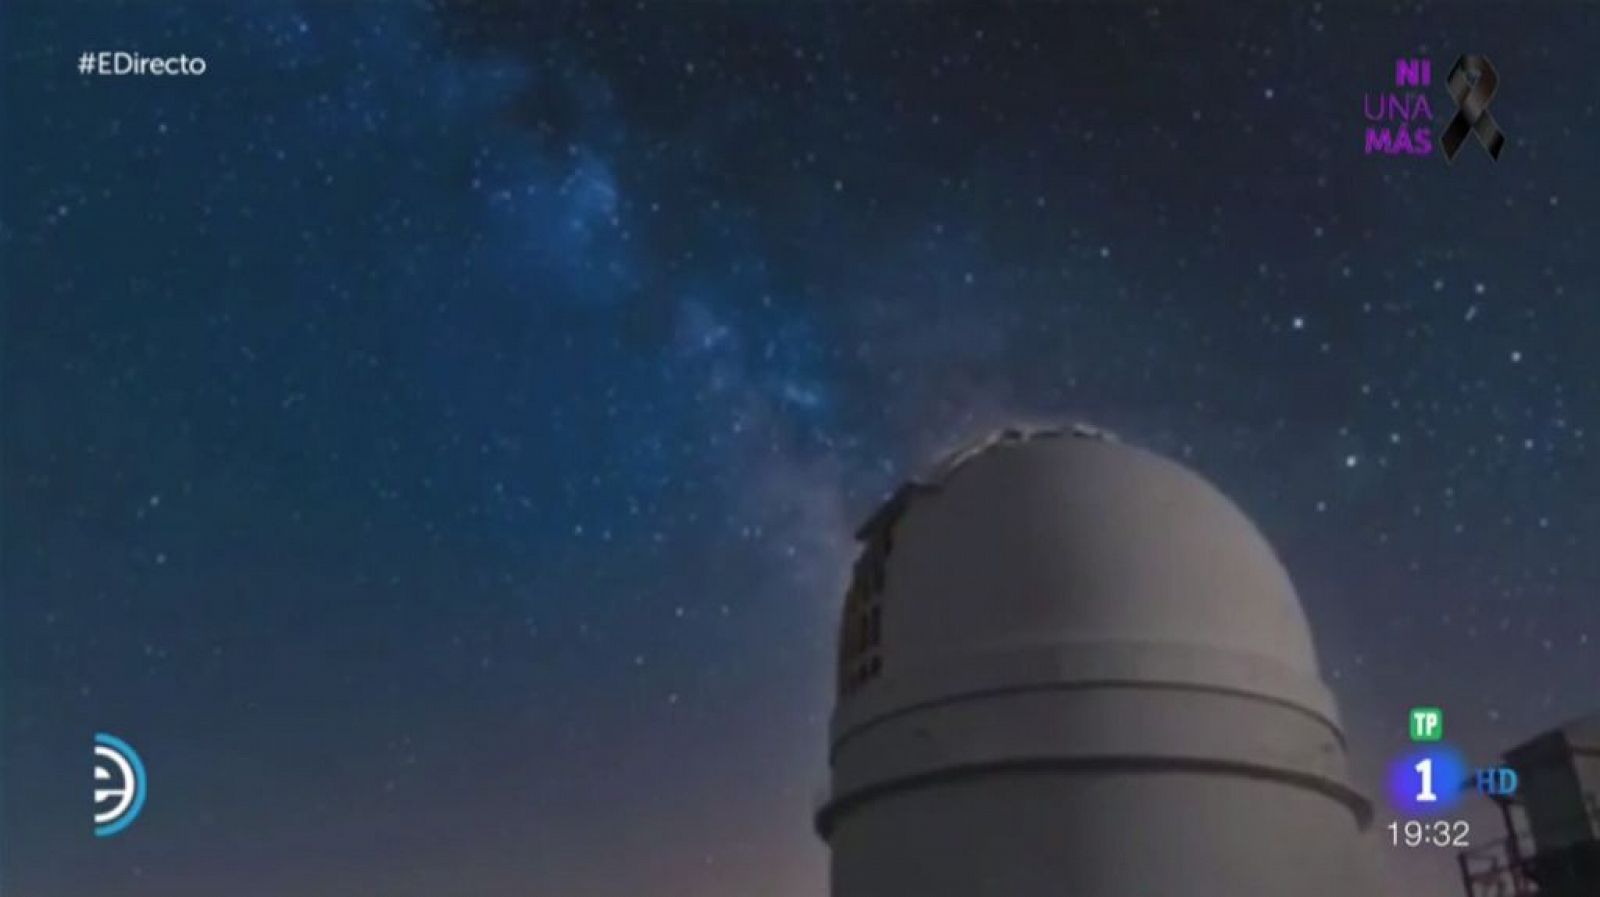 Un telescopio de Almería descubre un sistema solar con dos planetas que podrían tener agua líquida